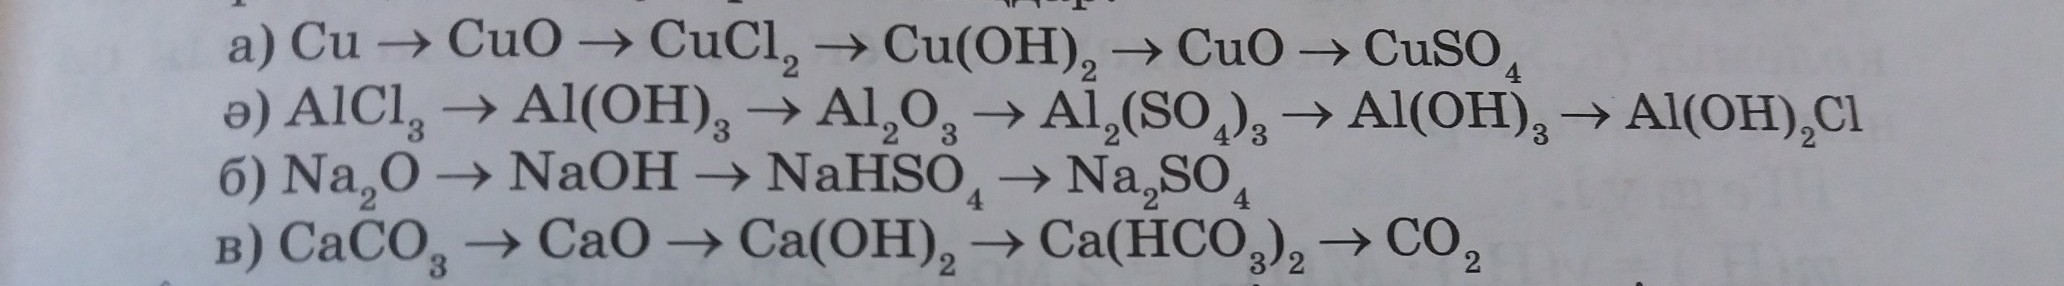 So3 h2so4 al2 so4 3. Al(Oh)3- al2o3 al CL 3. Alcl3 al Oh 3. Реакция al(Oh)3=al2o3. Al Oh 2 alcl3.